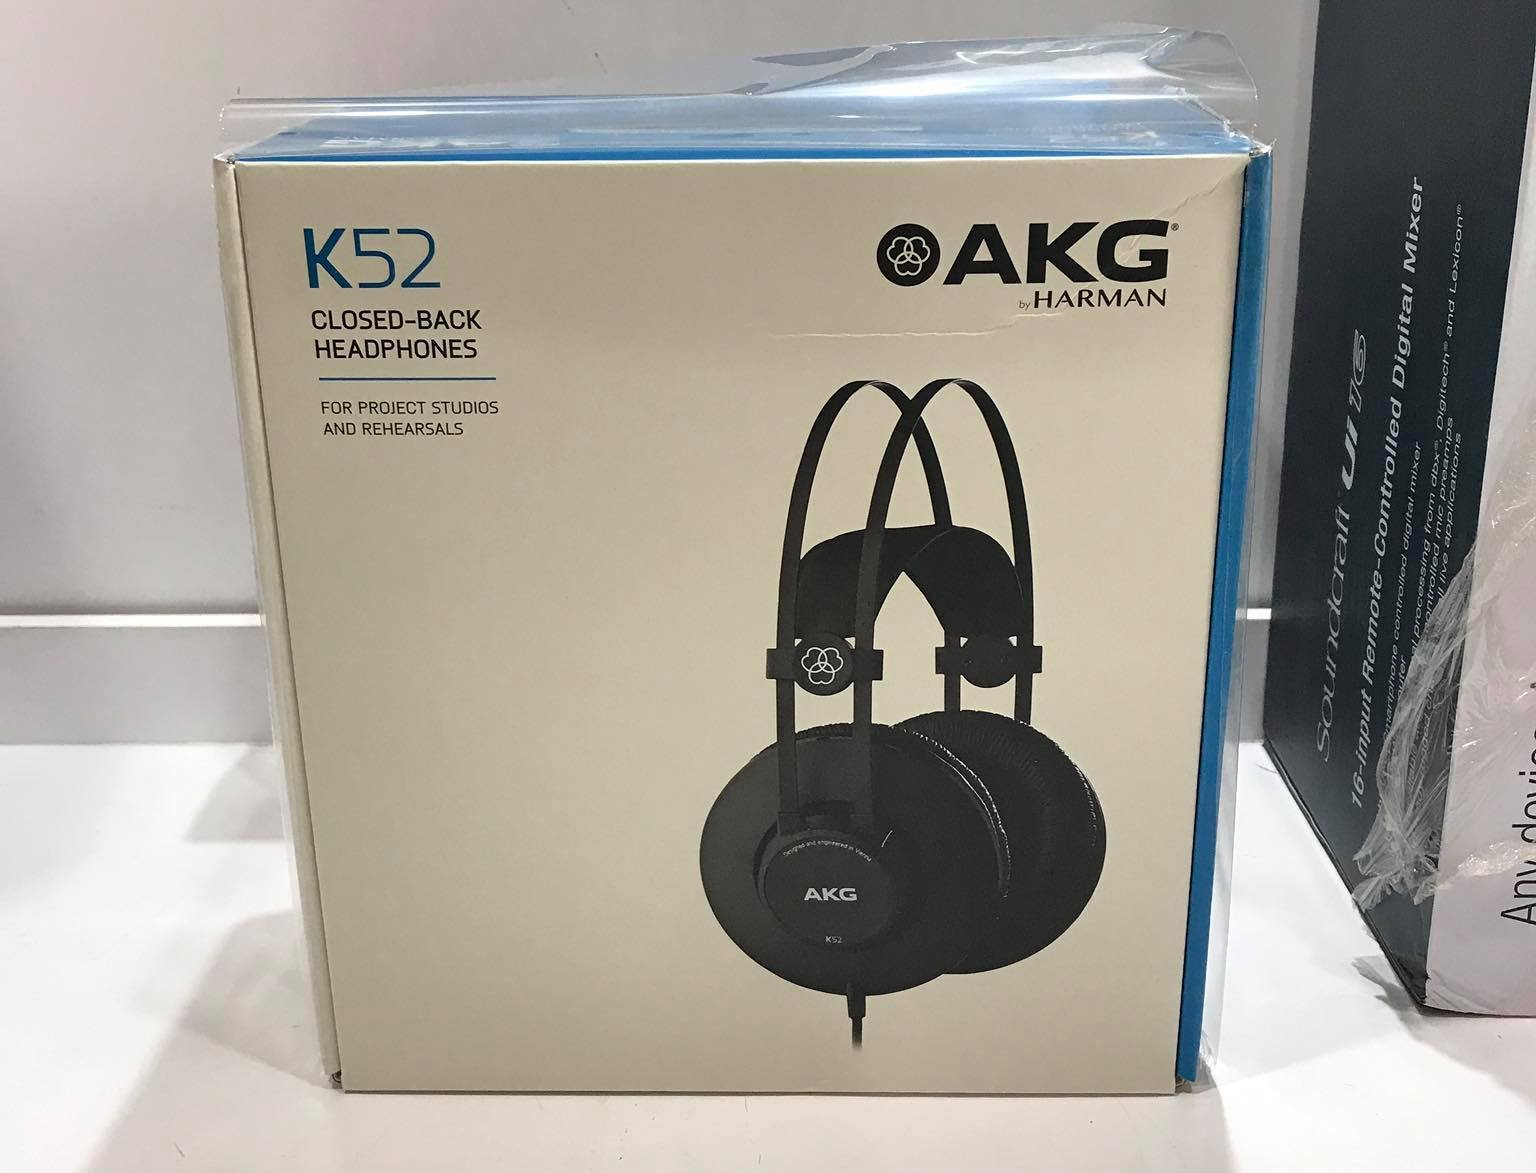 หูฟัง AKG K52 ชุดหูฟัลครอบหัว อย่างดี